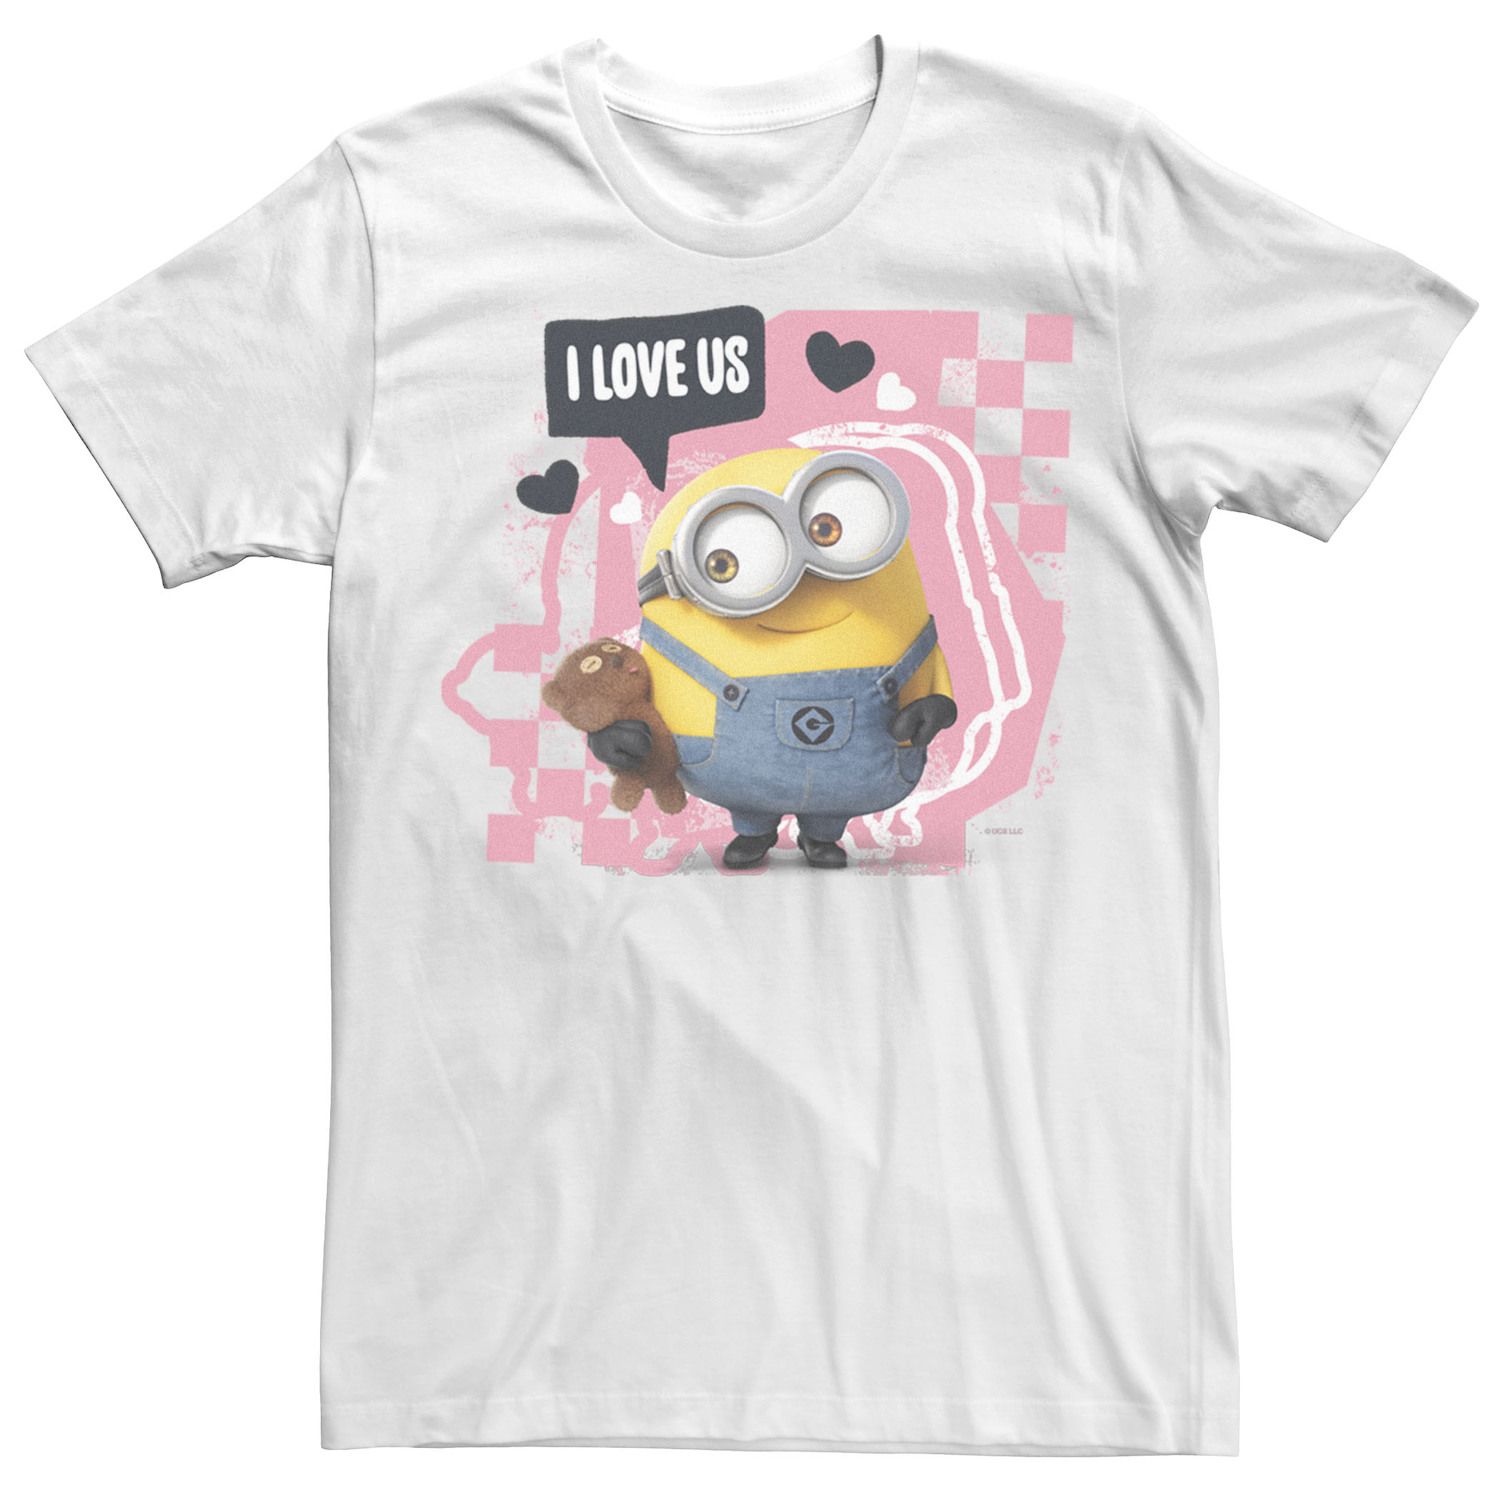 цена Мужская розовая футболка с портретом в клетку Minions I Love Us Licensed Character